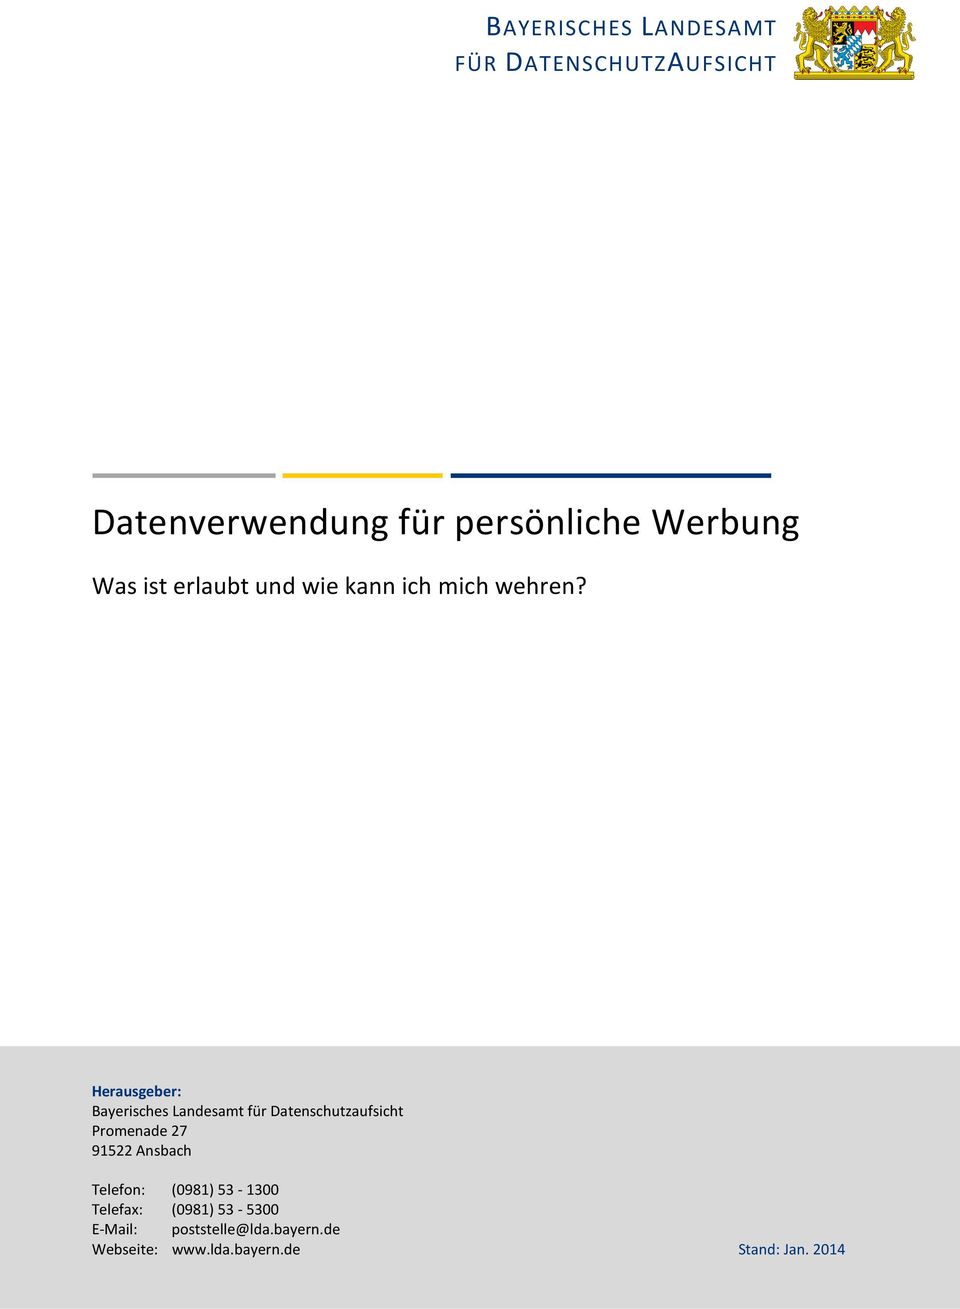 Herausgeber: Bayerisches Landesamt für Datenschutzaufsicht Promenade 27 91522 Ansbach